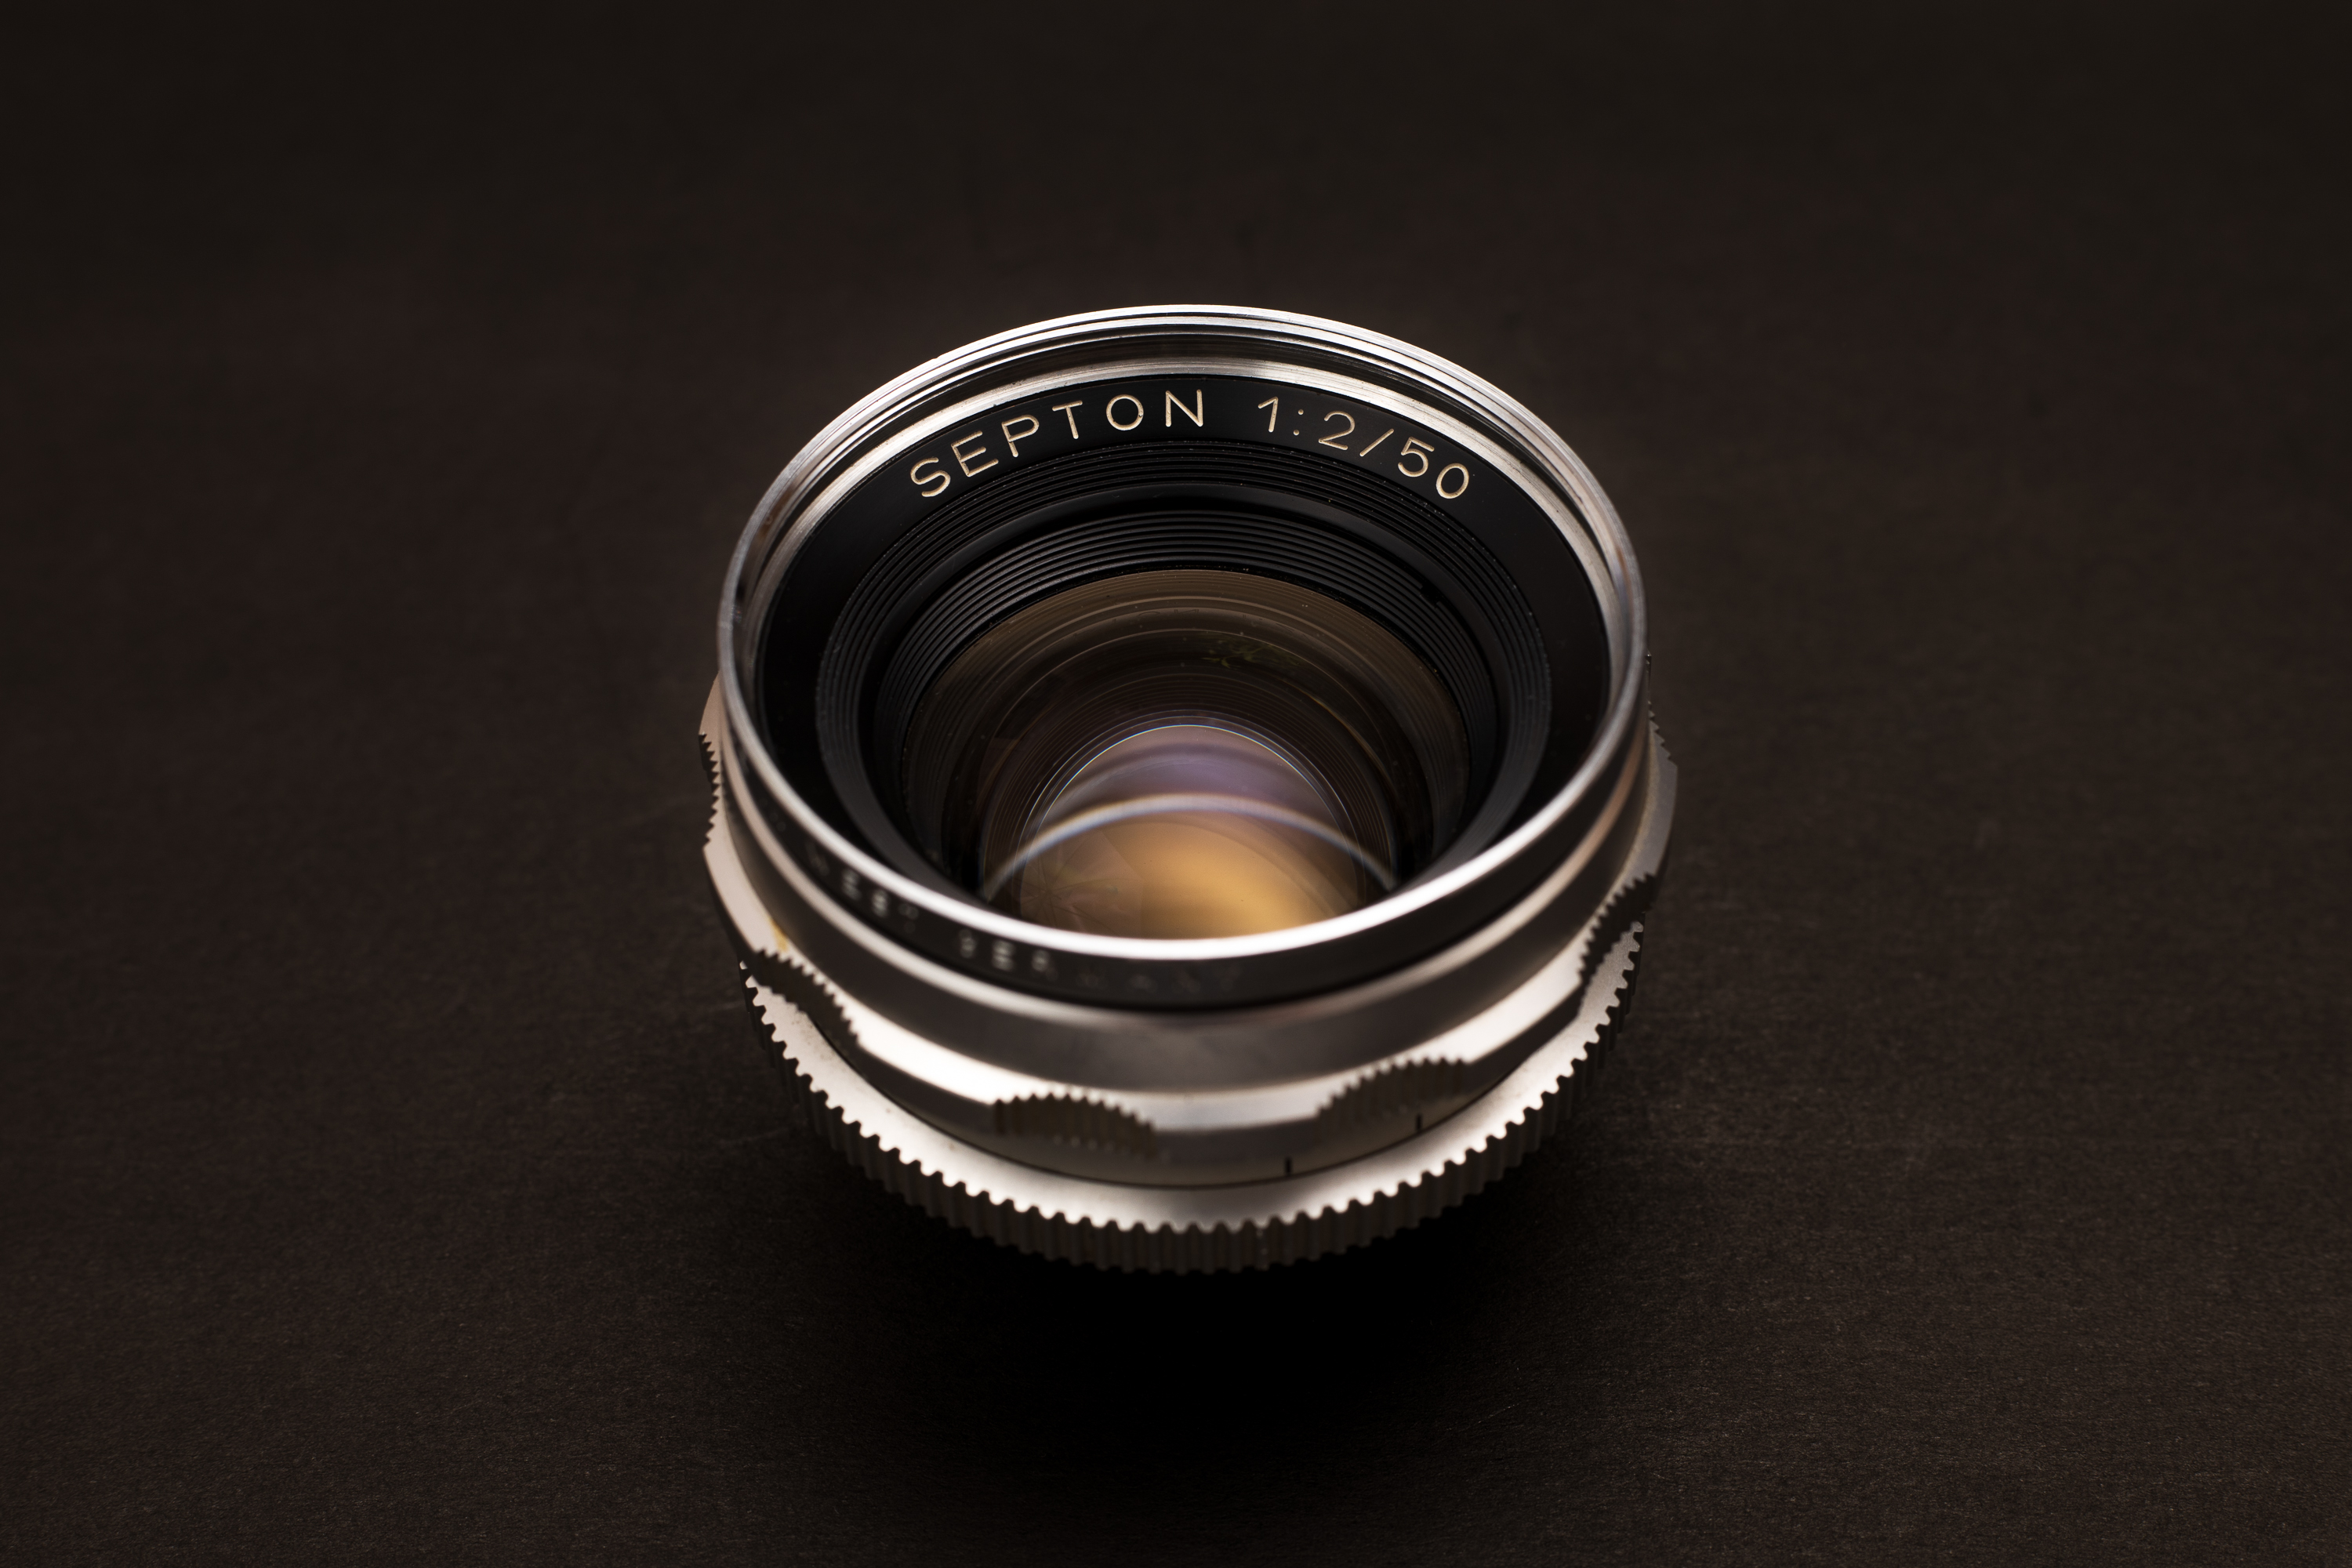 Voigtländer Septon 50mm f2 Lens